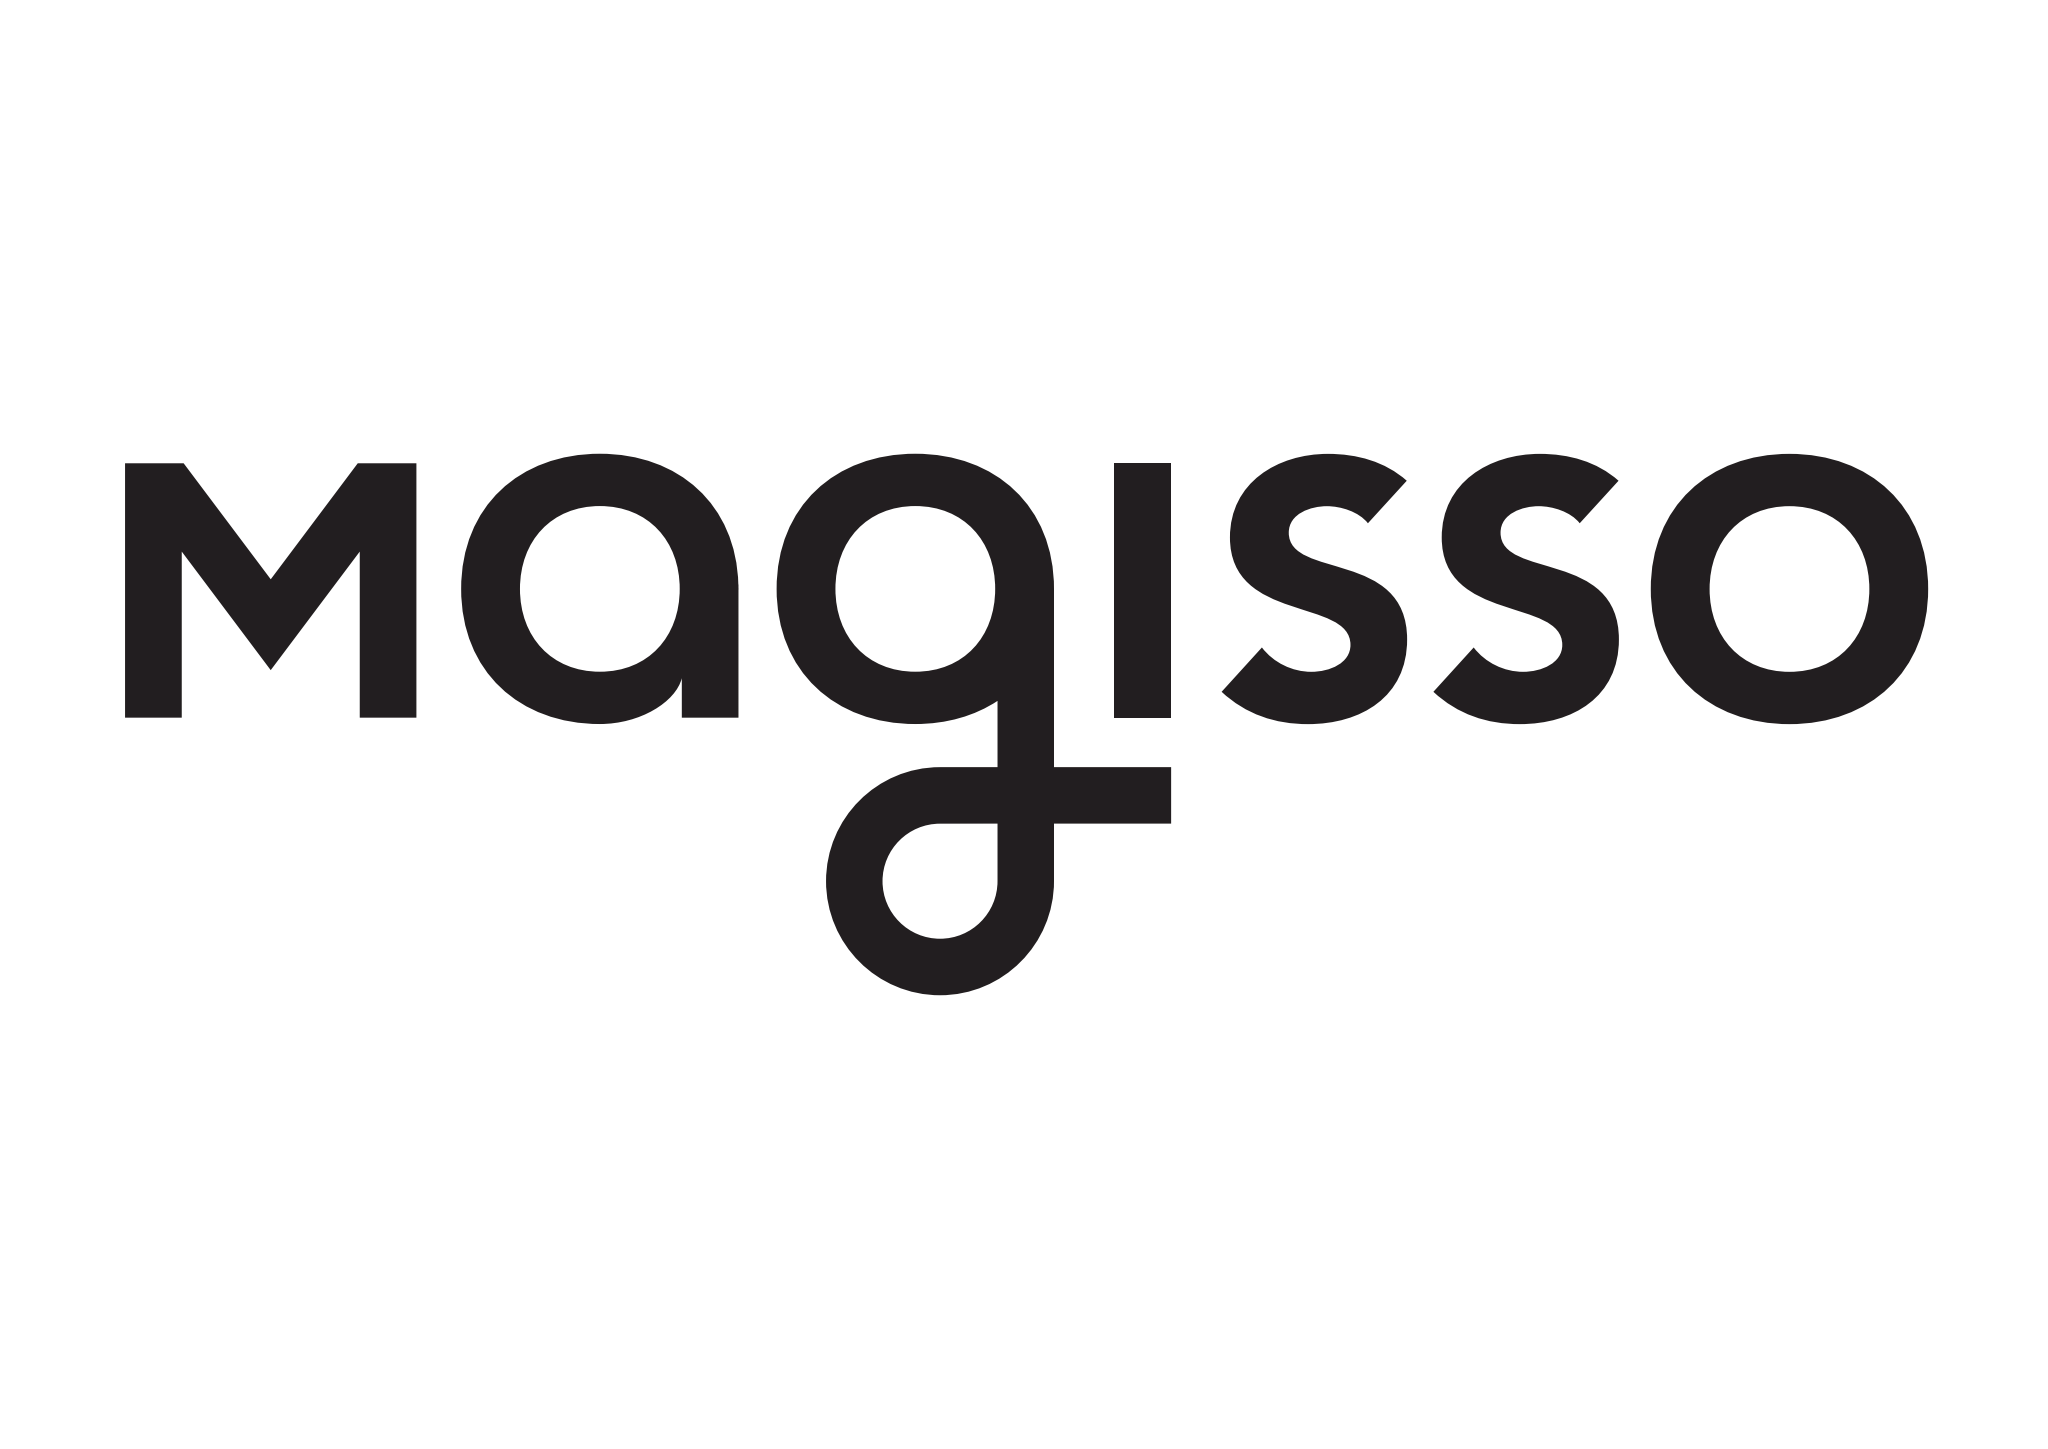 Magisso